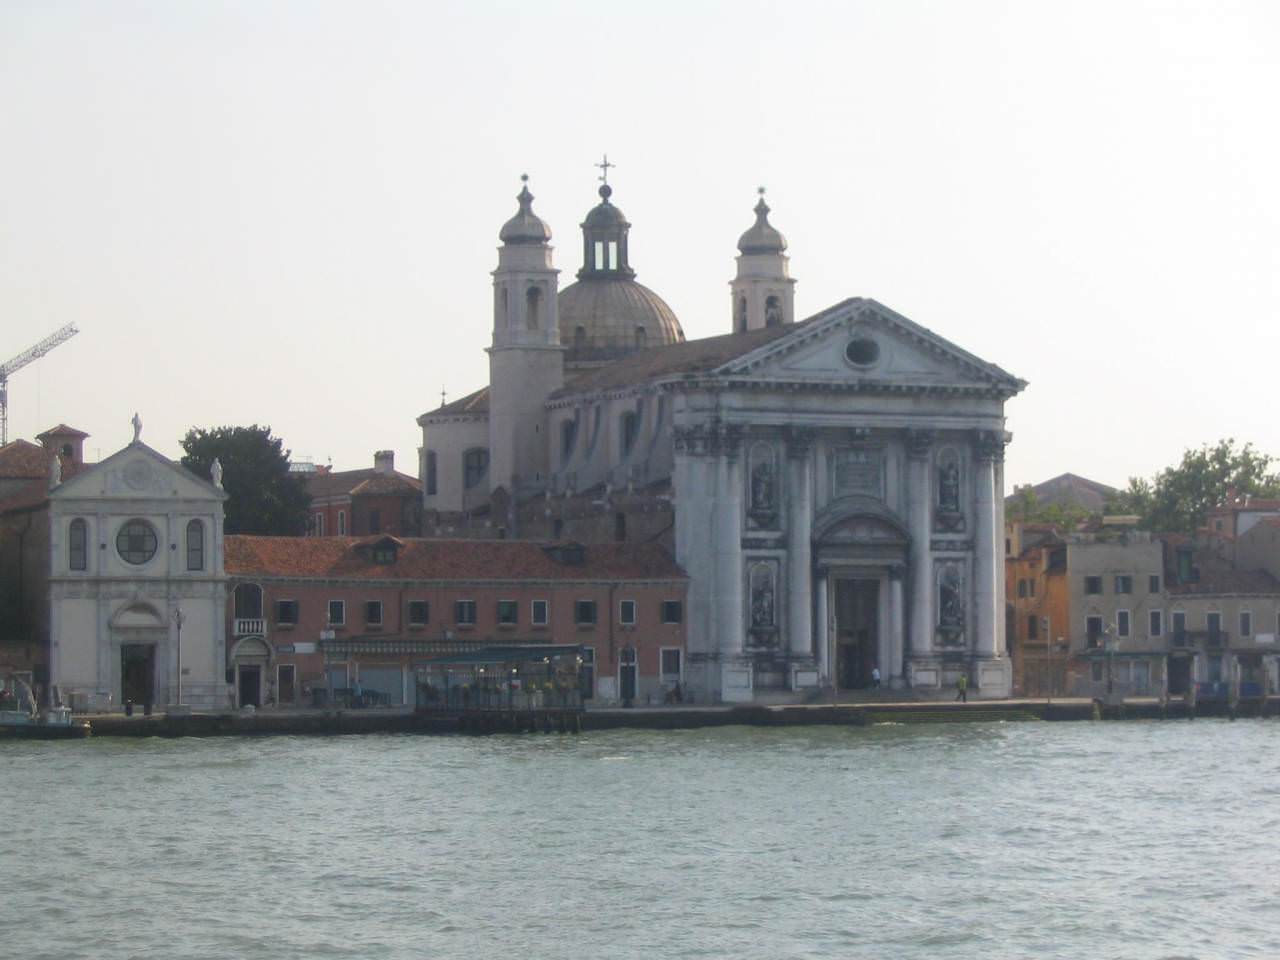 Βενετία από το καραβάκι #1